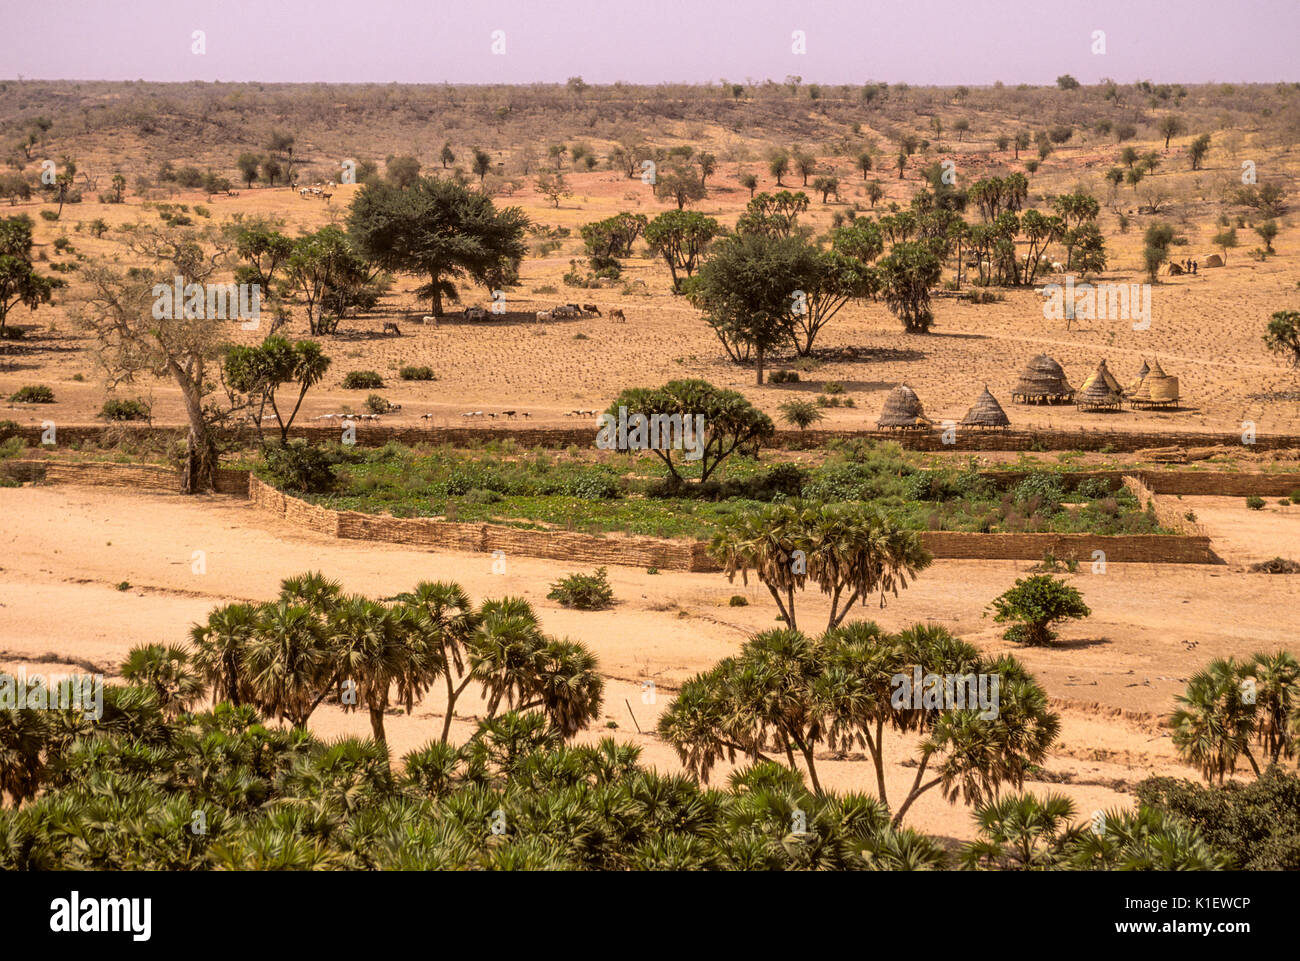 Le Niger, Afrique de l'Ouest, près de l'Barkewa. Jardin clos, dans un endroit sec, bien sûr à l'eau dans la région semi-aride du Sahel. Banque D'Images